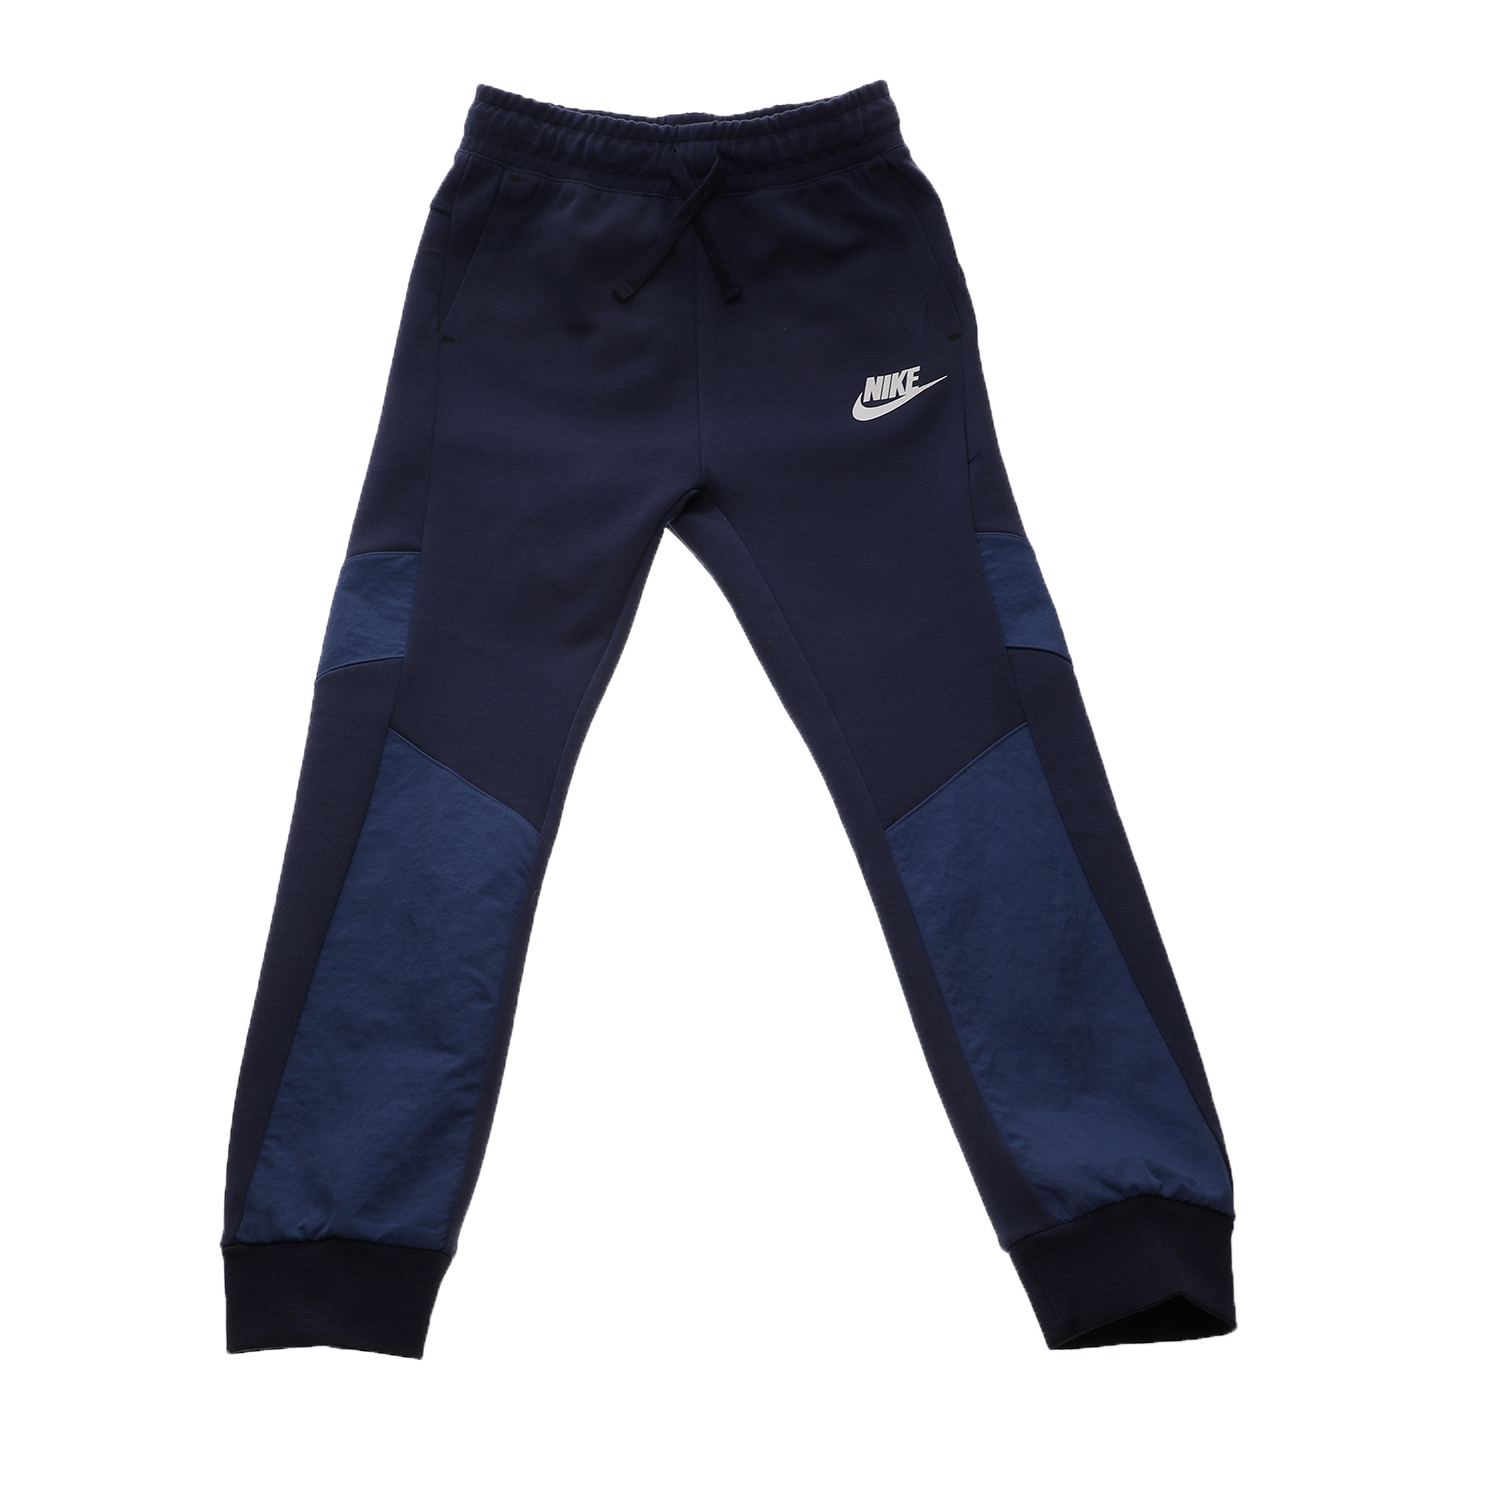 Παιδικά/Boys/Ρούχα/Αθλητικά NIKE - Παιδικό παντελόνι φόρμας NIKE NSW TECH FLC WINTERIZED μπλε